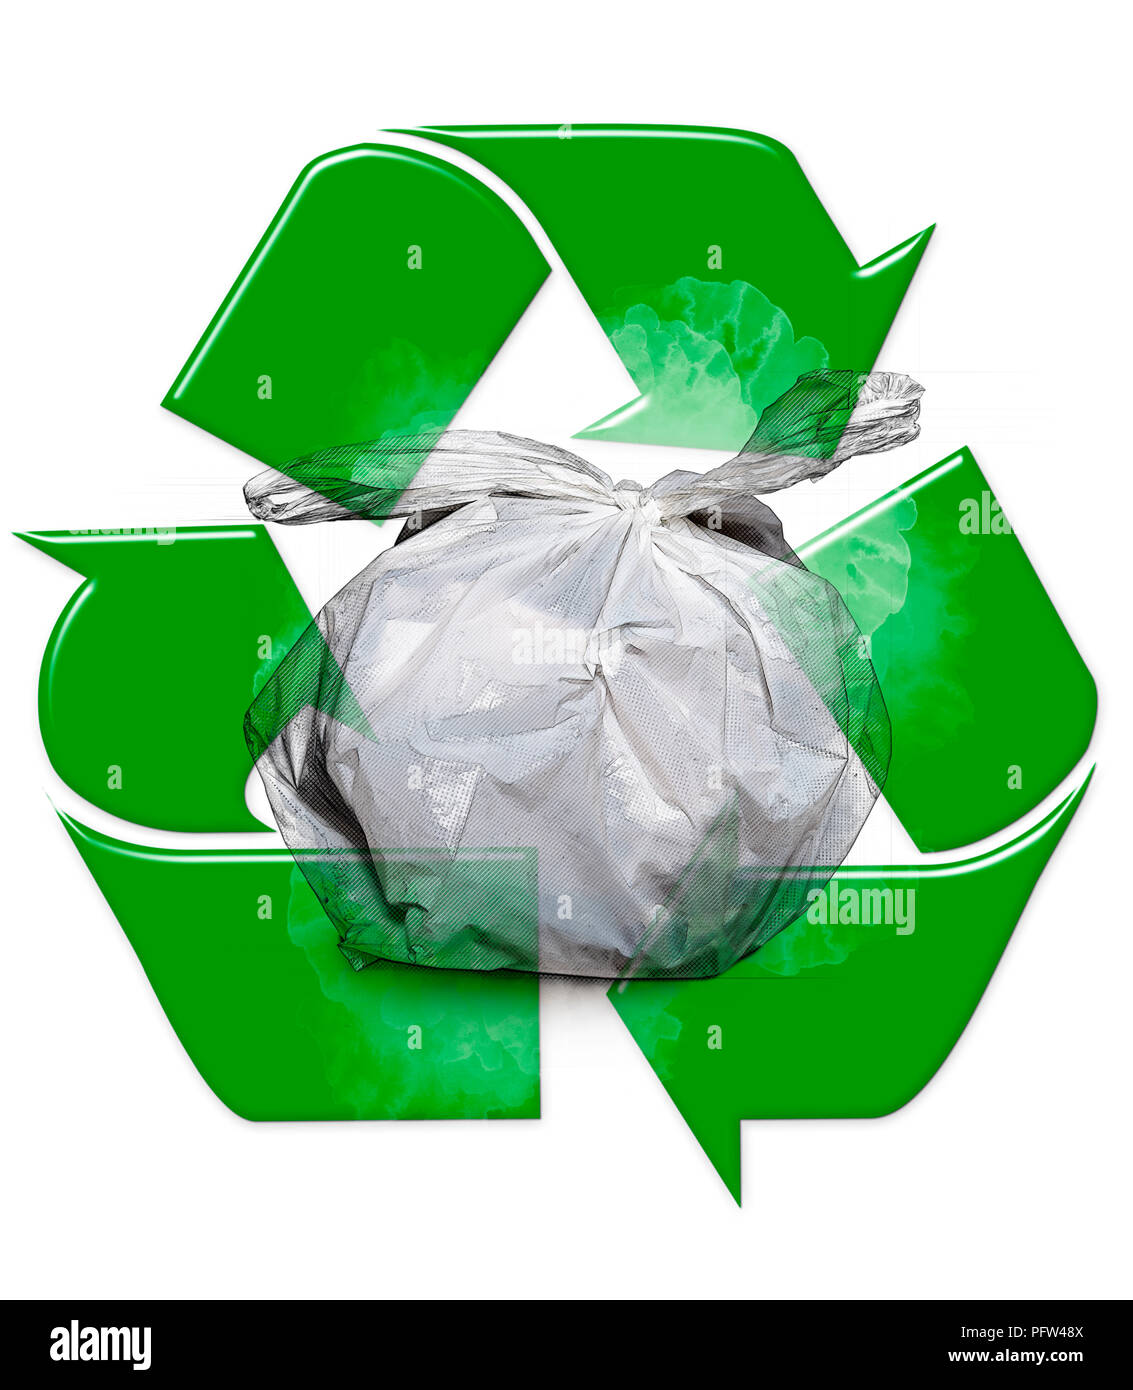 Null-Abfall, Mülleimer Kunststoff, inoffizielle für heimliche Depot. Mangelnde gesellschaftliche Verantwortung Stockfoto